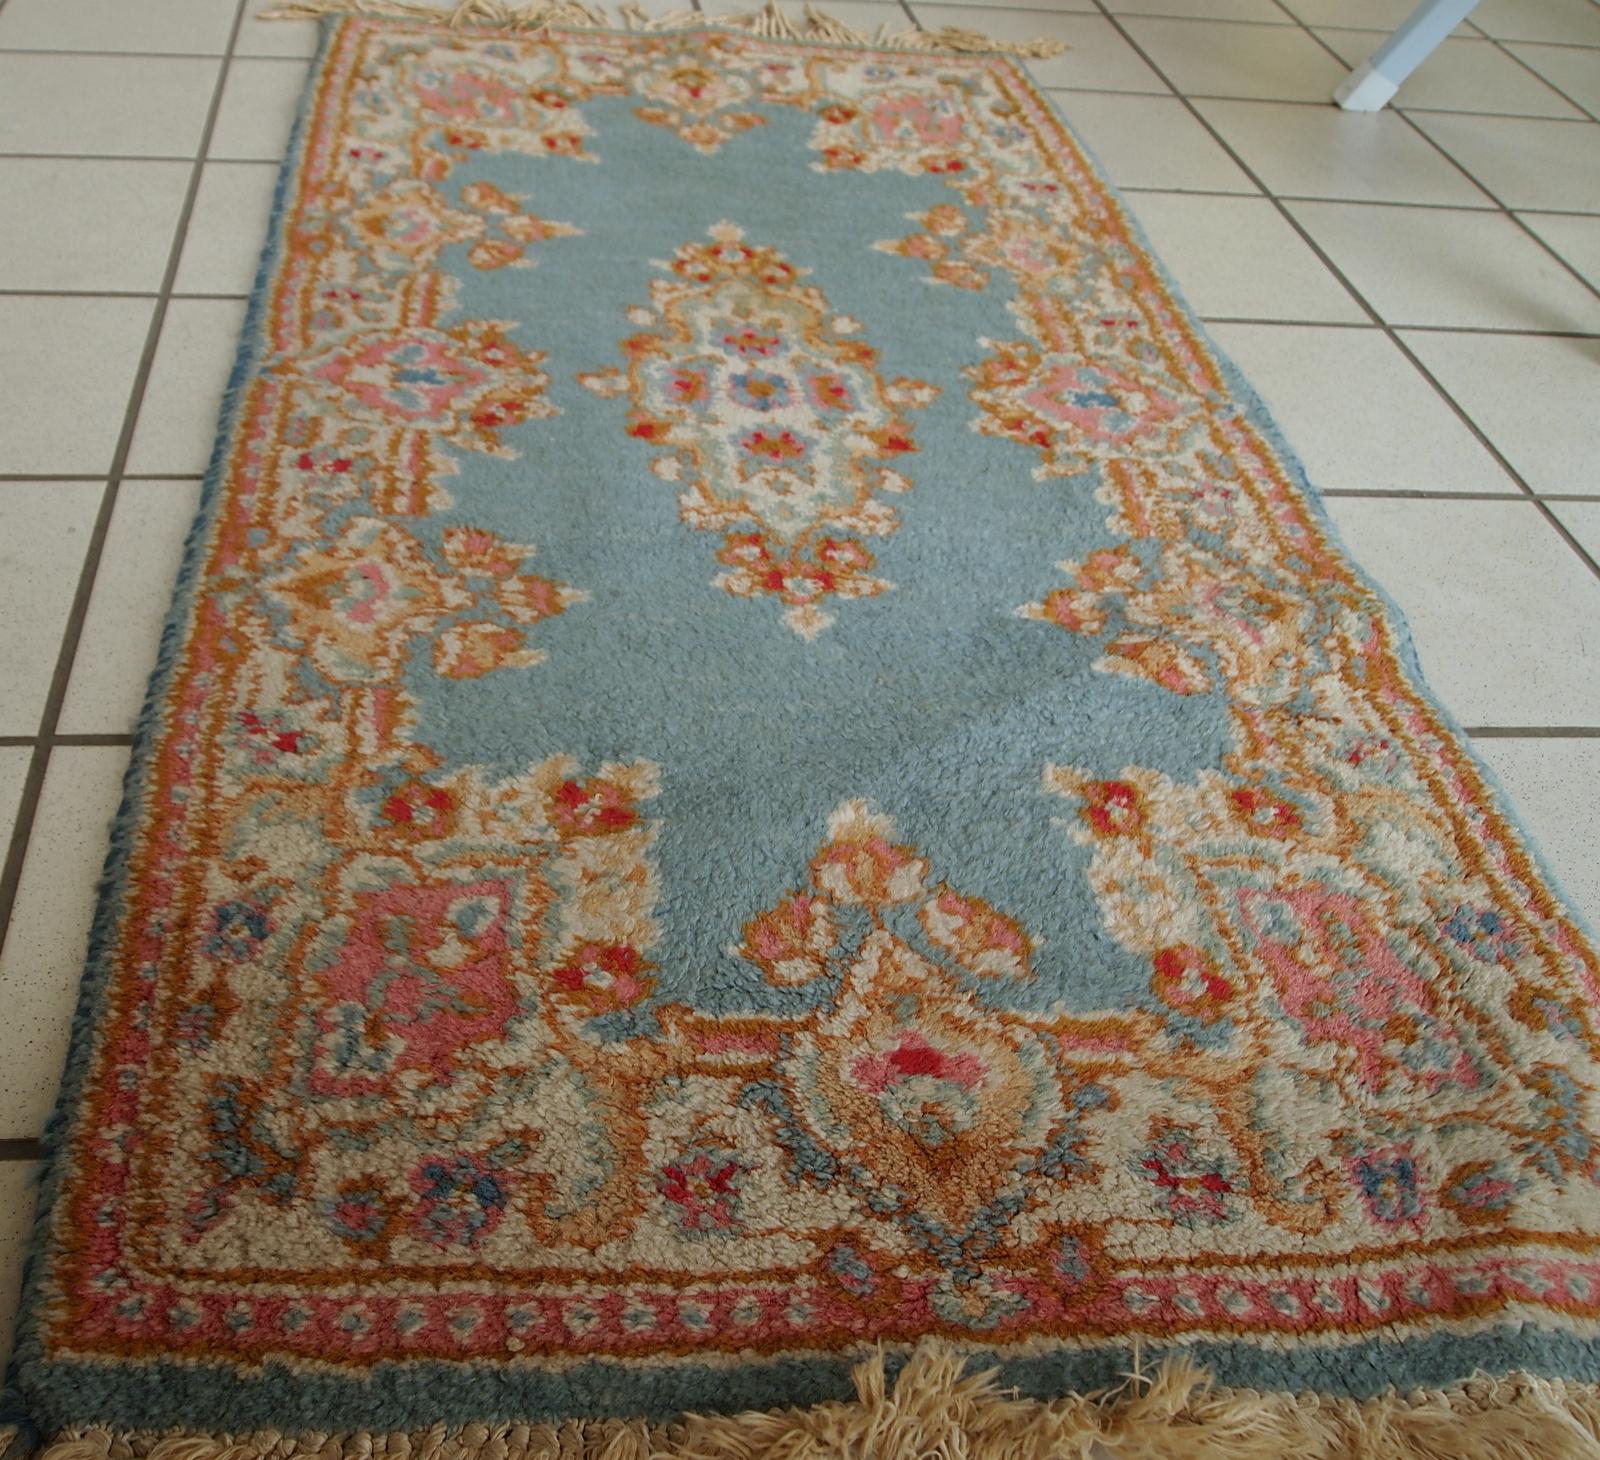 Handgefertigter Vintage-Teppich aus dem Nahen Osten in himmelblauer Farbe. Es ist in einem guten Originalzustand vom Ende des 20.

-Zustand: original gut,

-ca. 1970er Jahre,

- Größe: 1,9' x 3,8' (60cm x 117cm),

- Material: